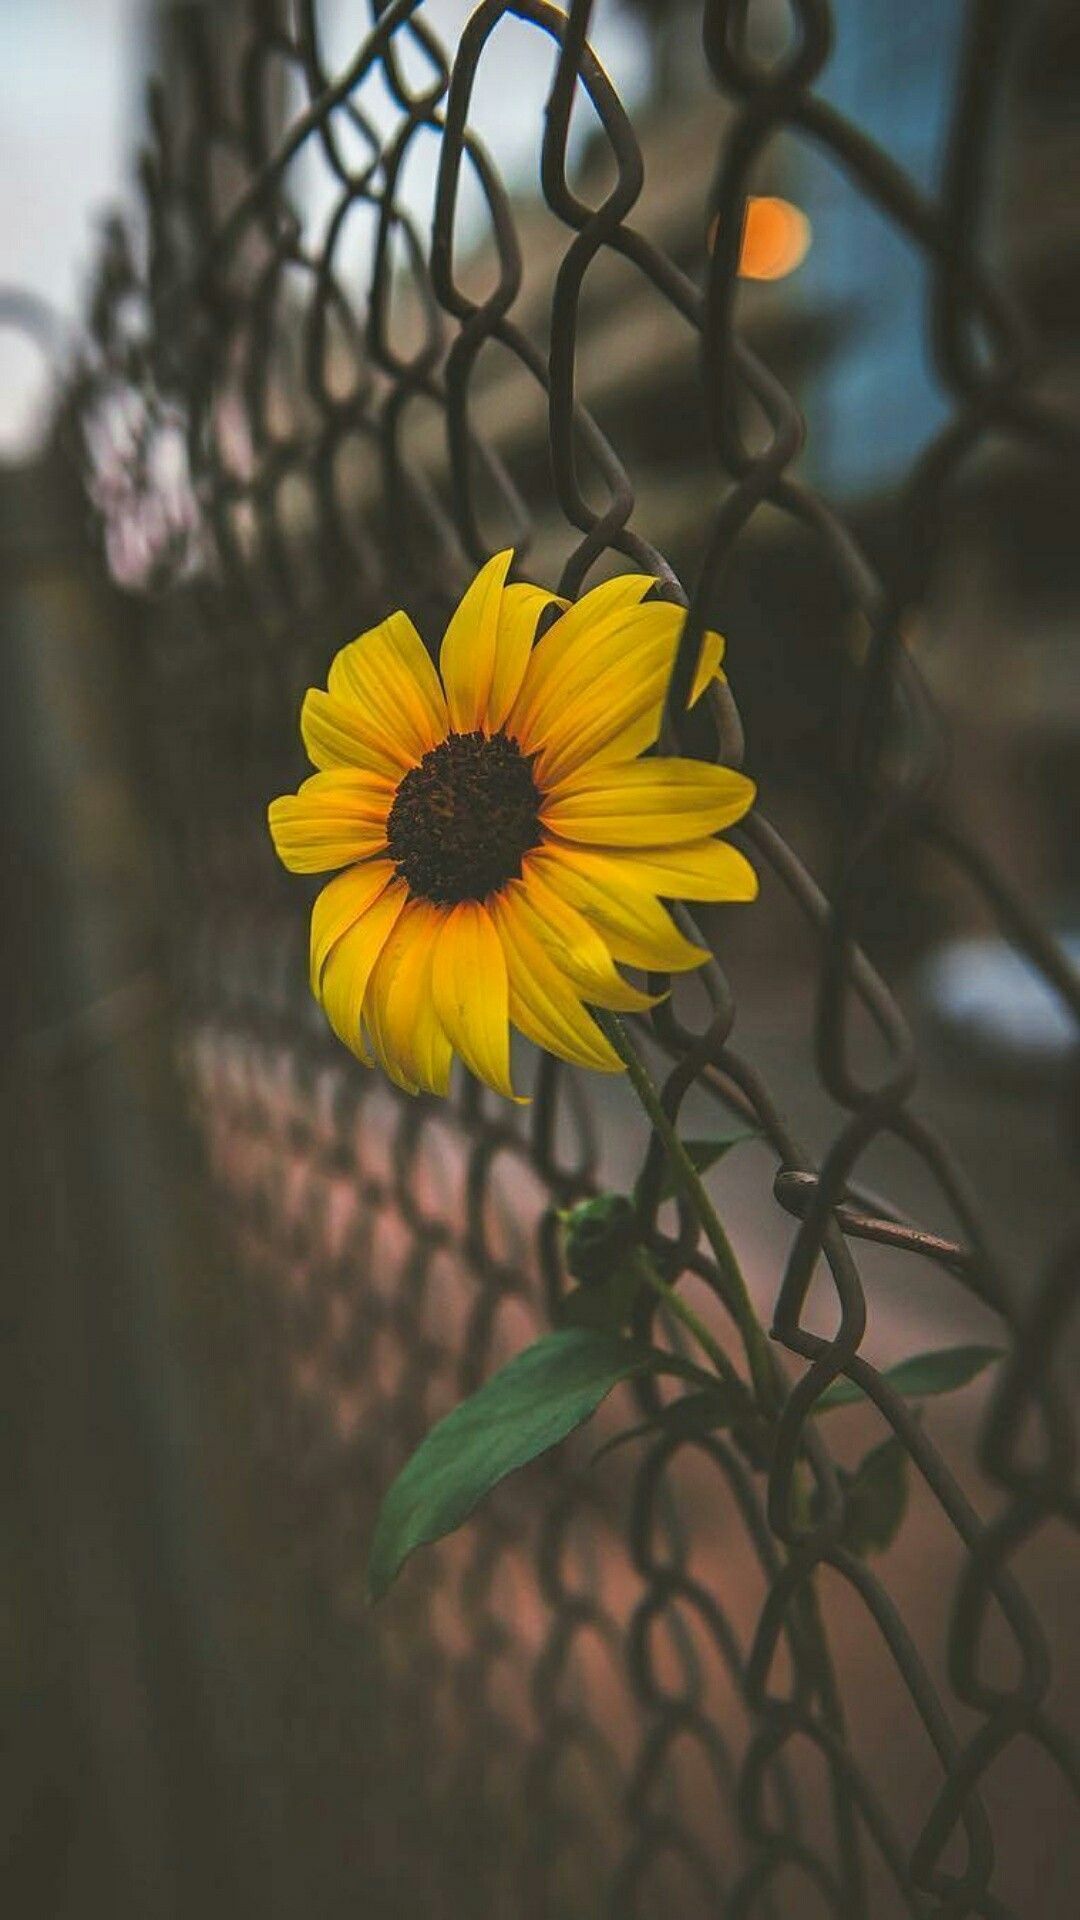 Hình ảnh Sunflower Wallpaper đẹp lung linh và tươi tắn là lựa chọn hoàn hảo cho ai yêu thích thiên nhiên và muốn tìm kiếm sự lạc quan trong cuộc sống. Hãy xem những hình ảnh này để tận hưởng sự ấm áp và rực rỡ của những bông hướng dương.